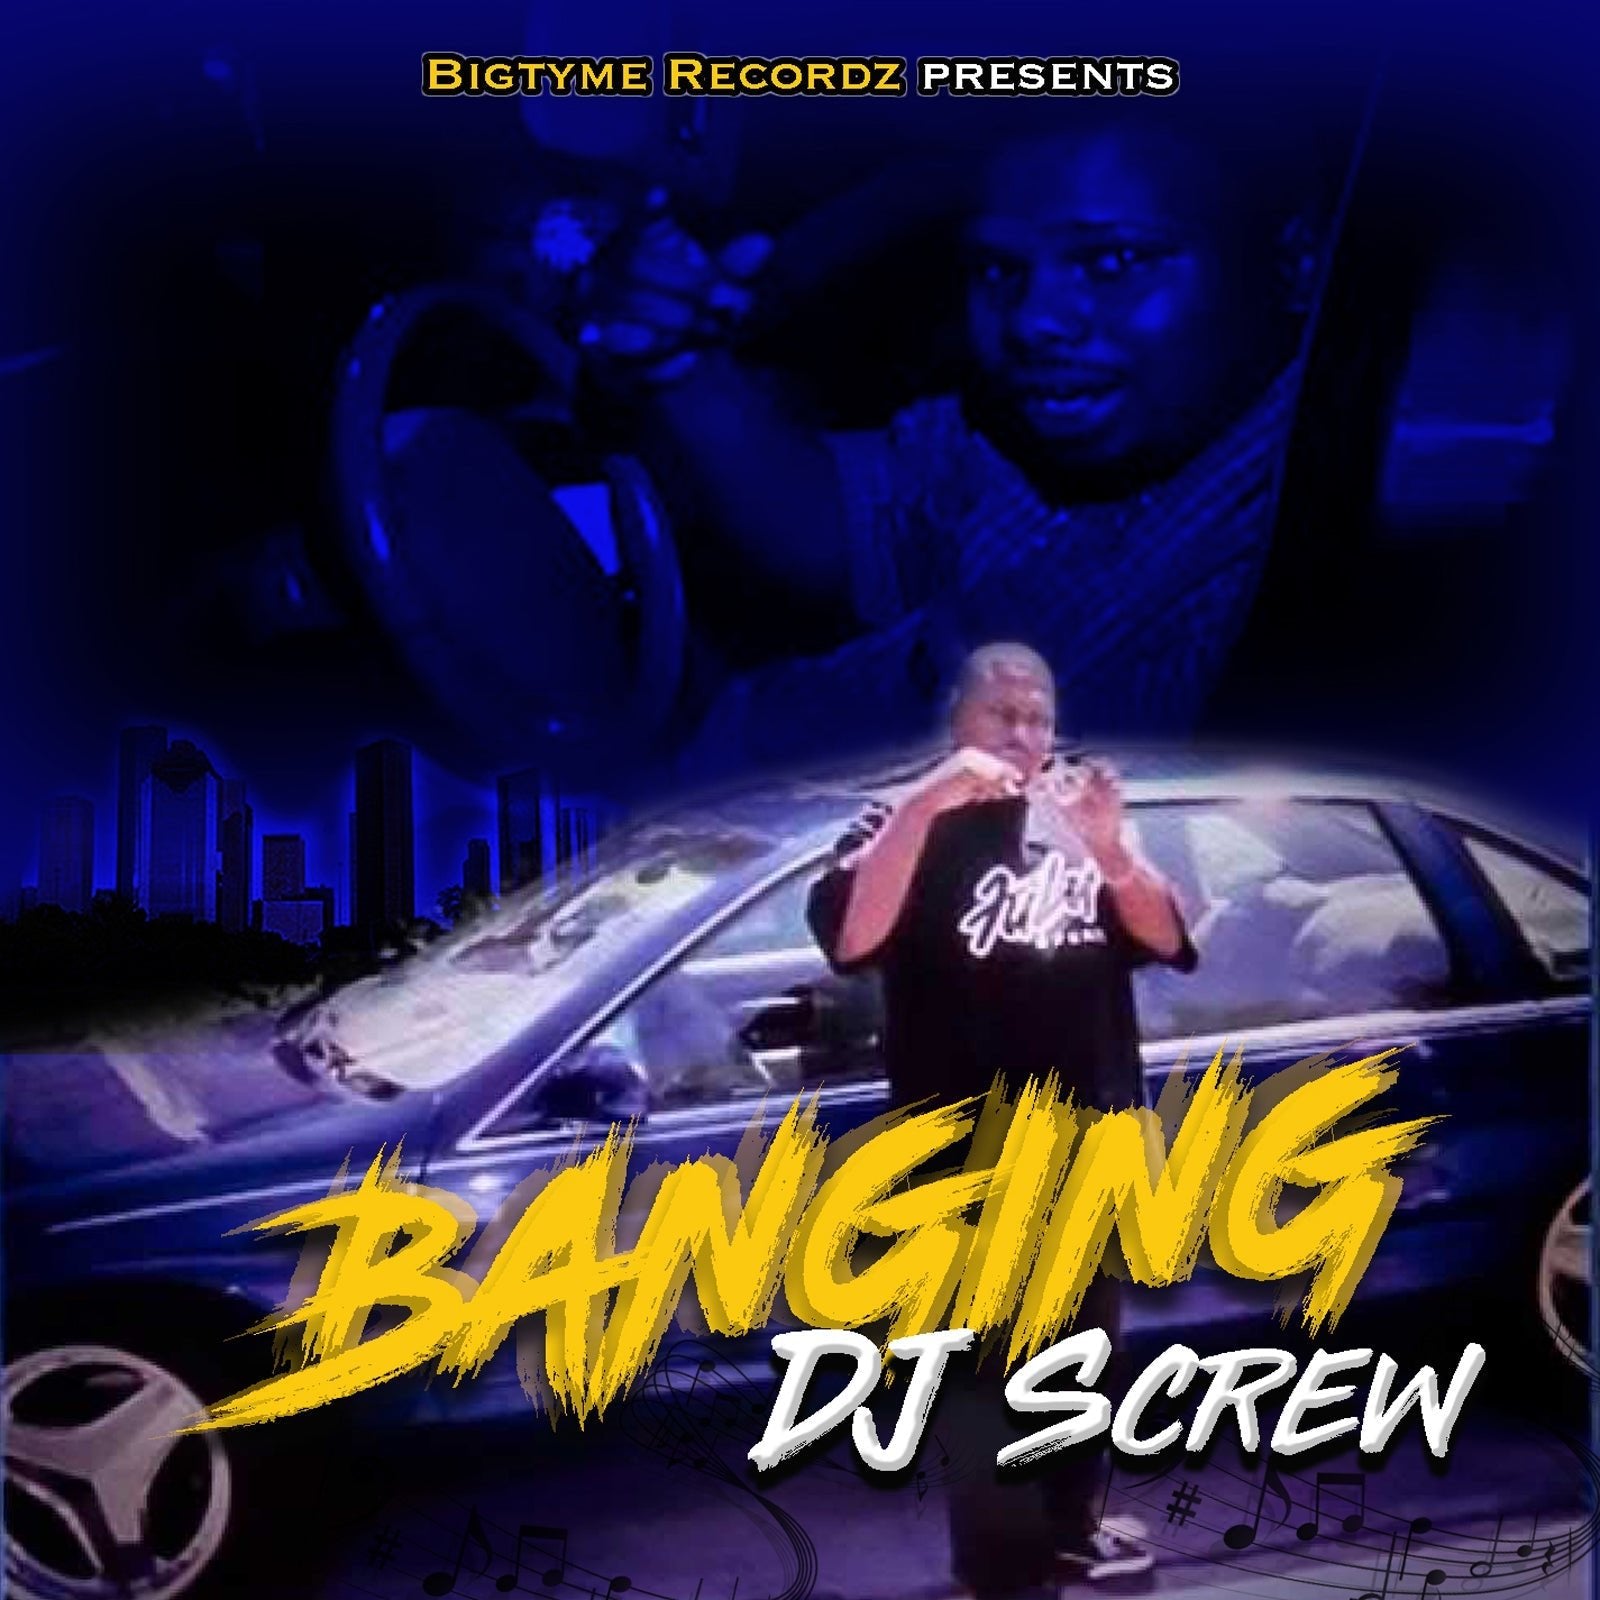 DJ Screw "Banging"